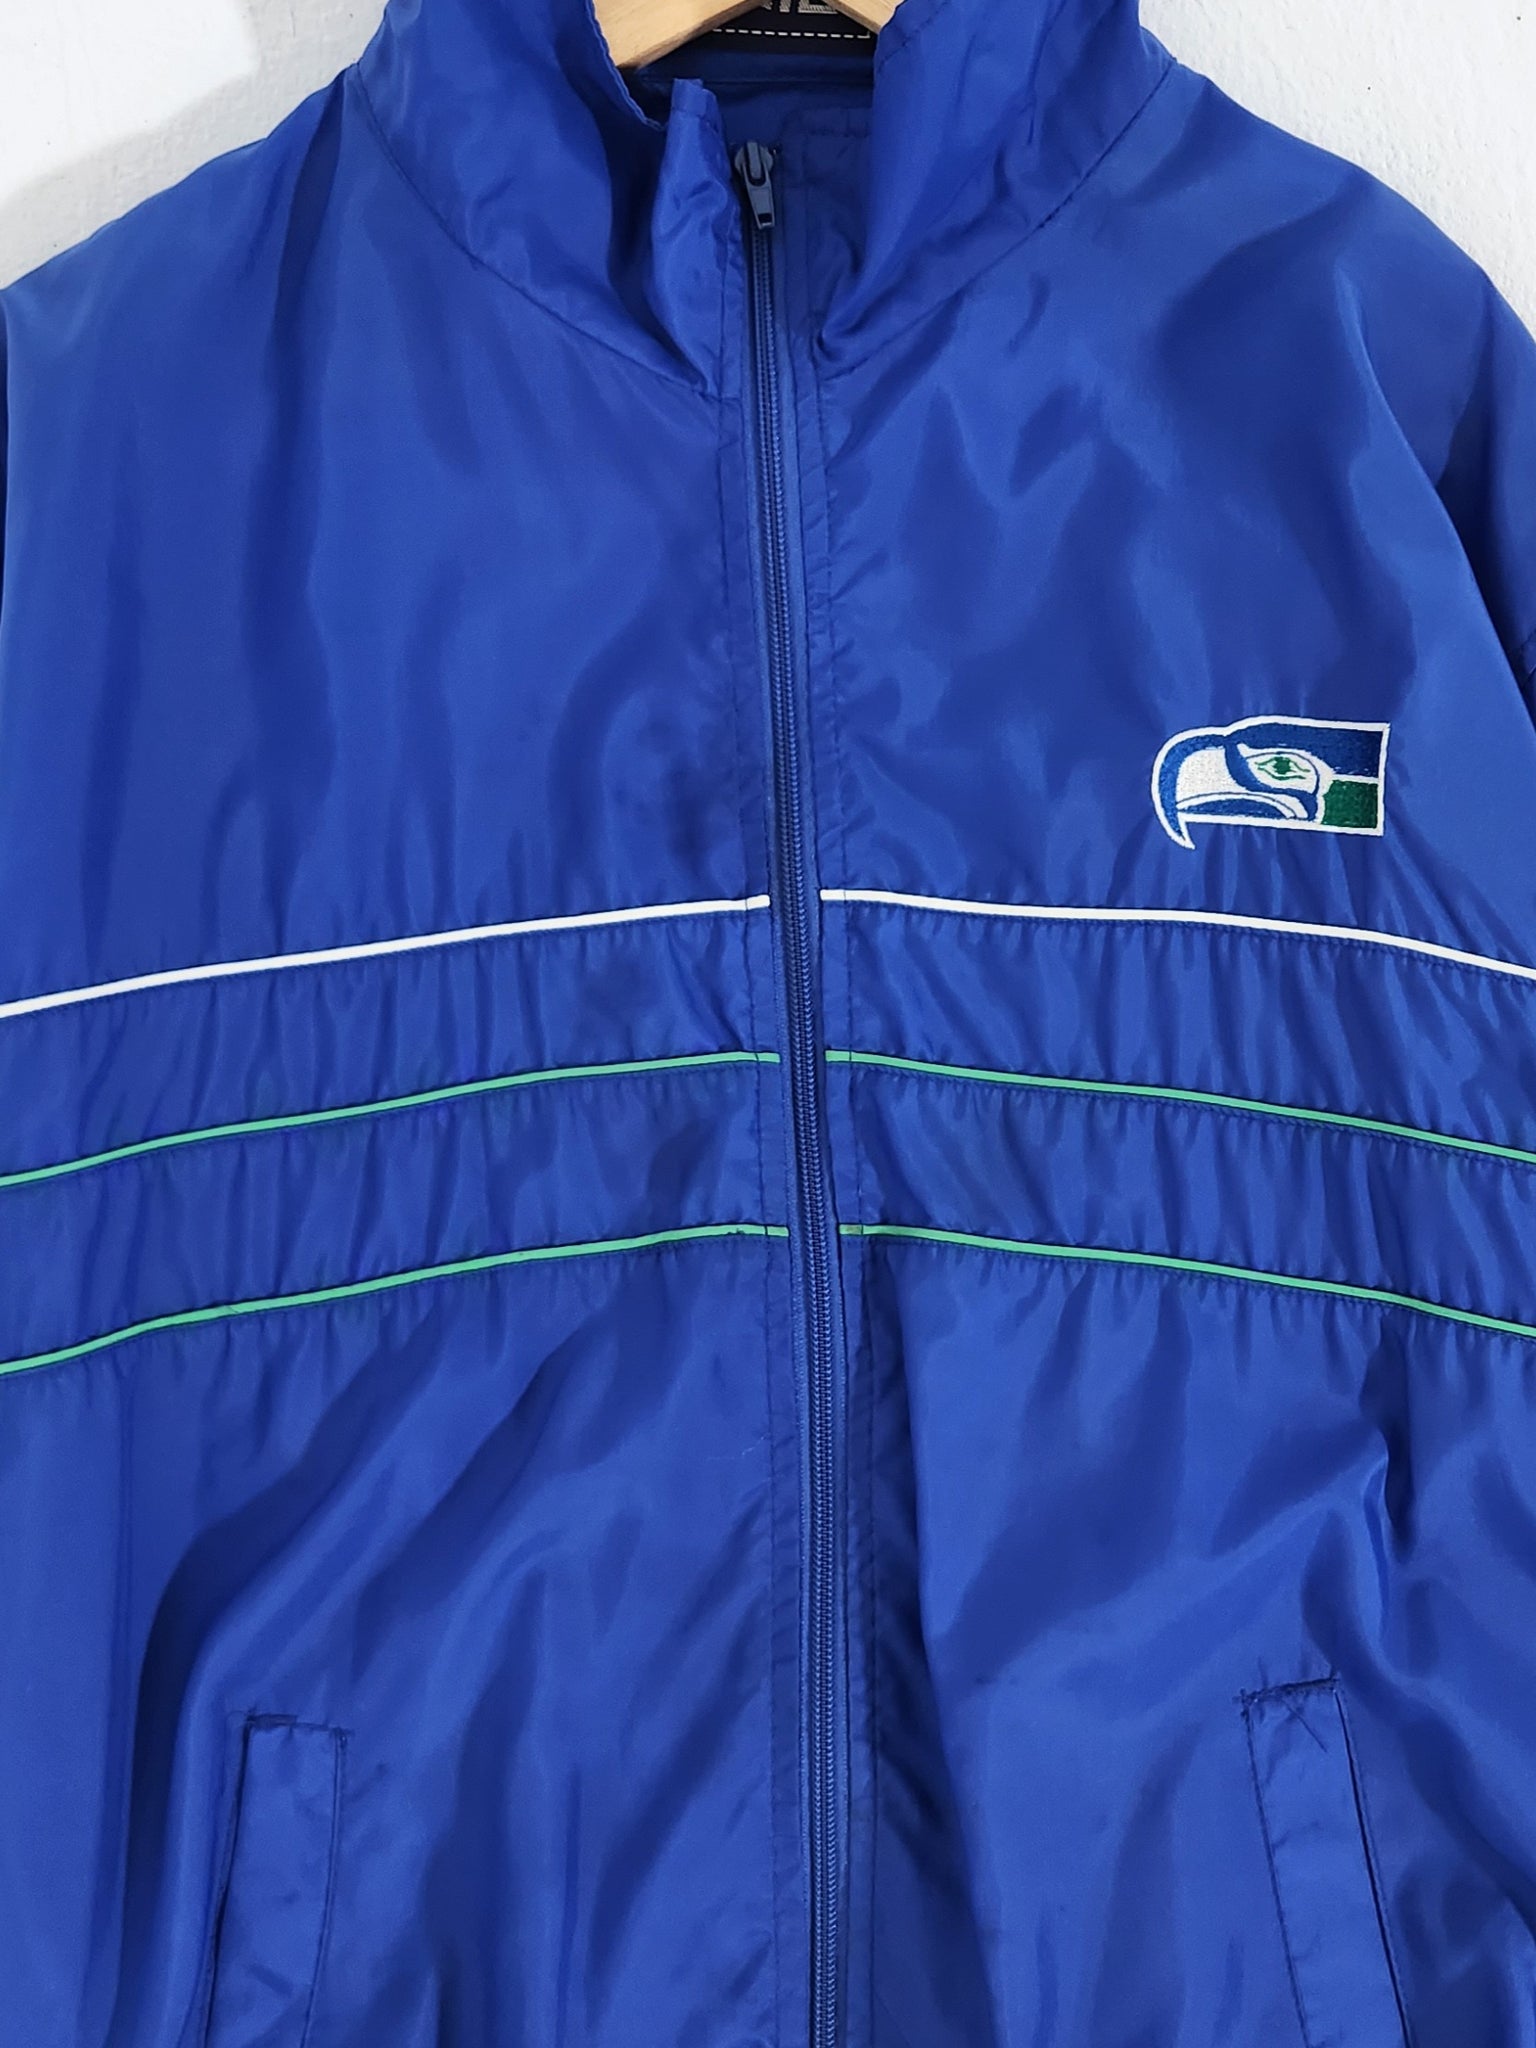 seattle seahawks vintage jacket